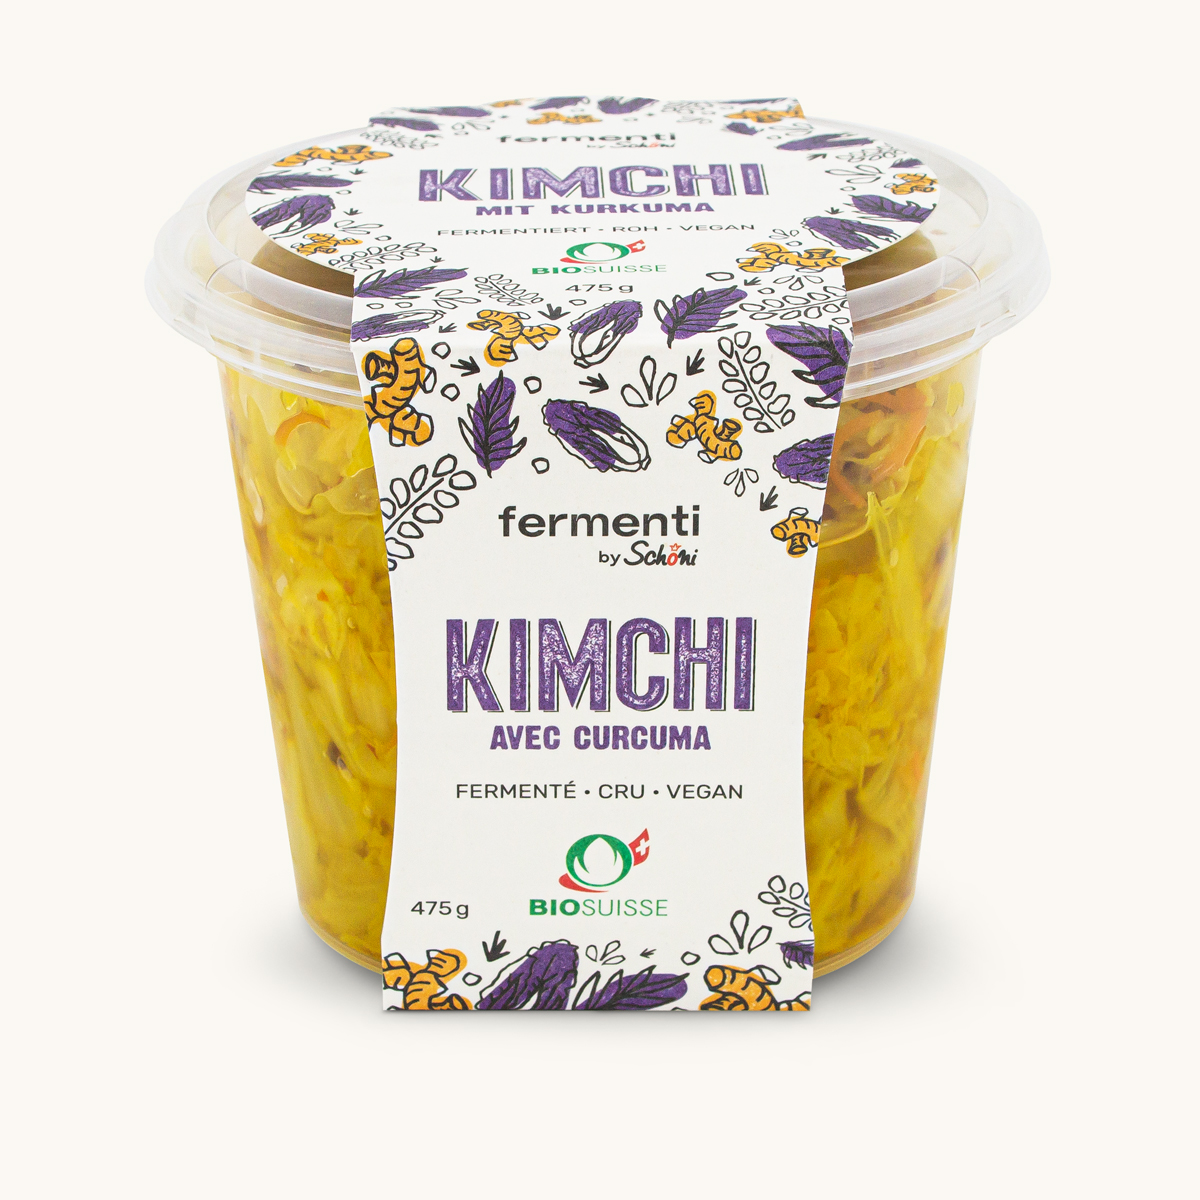 Kimchi mit Kurcuma, Fermenti, Schöni